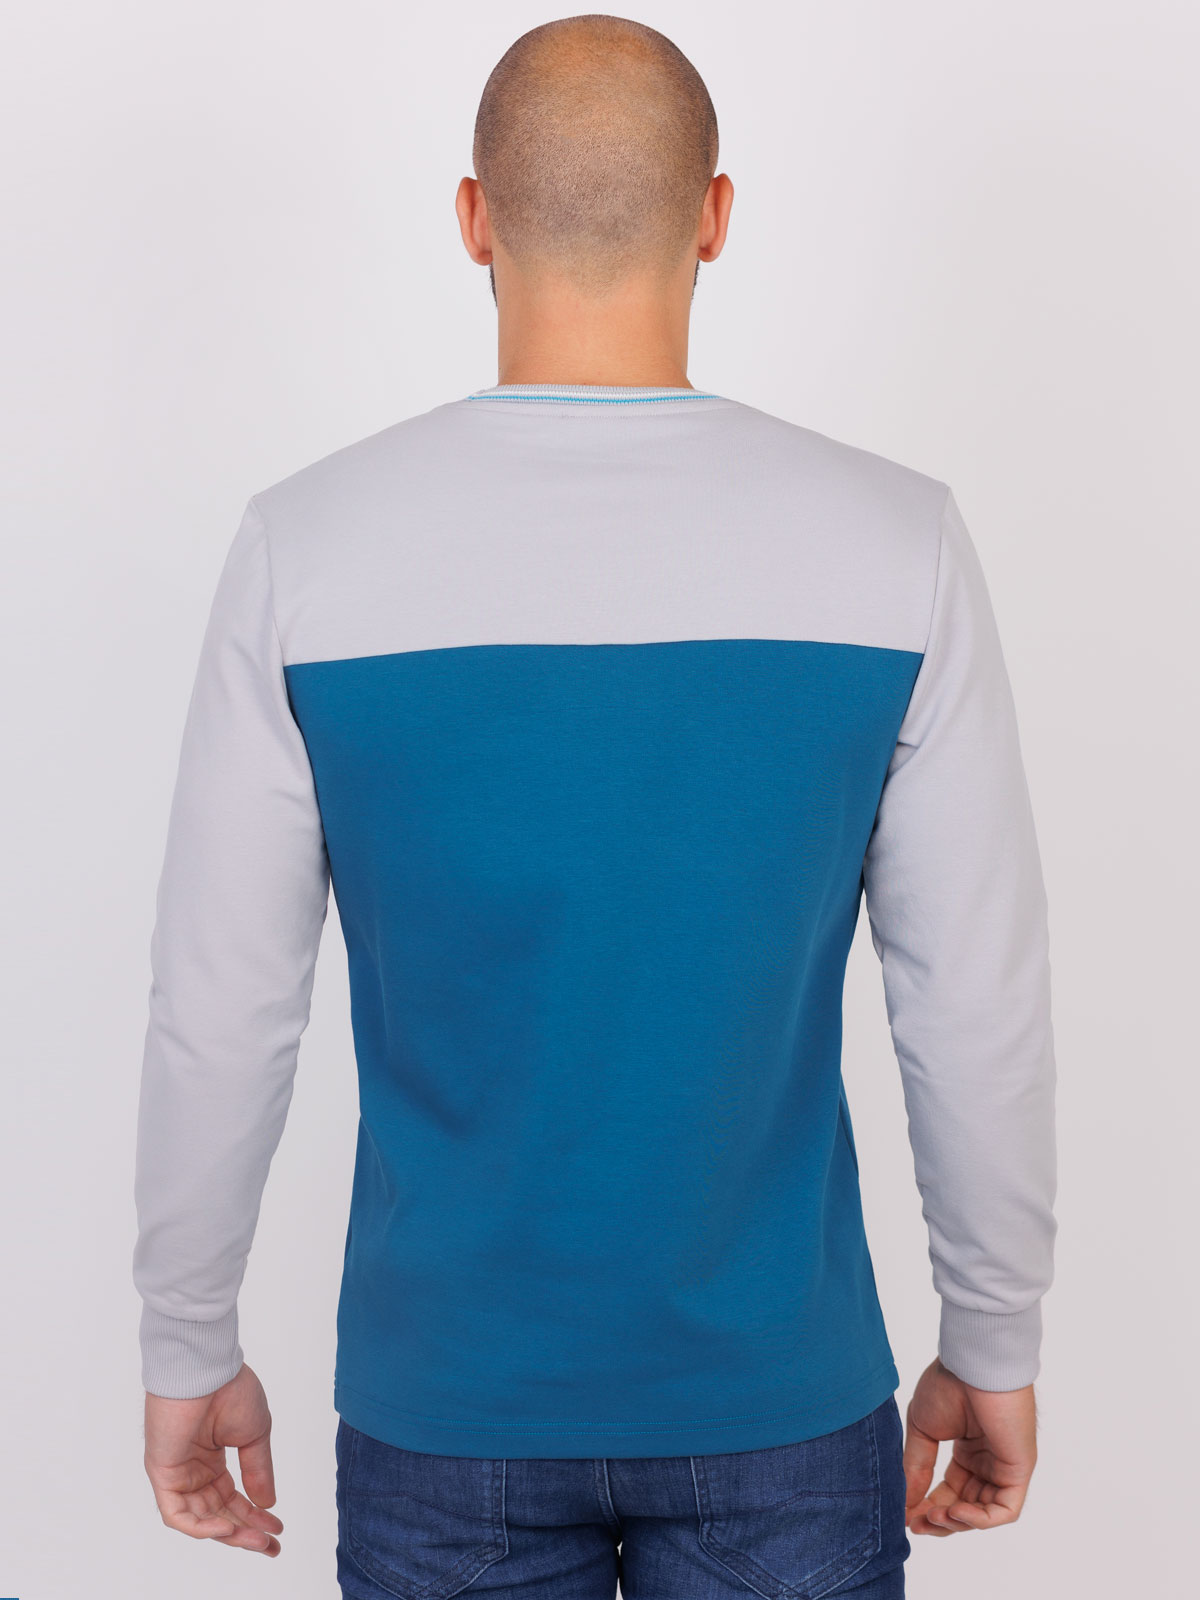 Ανδρική μπλούζα σε μπλε και γκρι - 42351 € 27.56 img2